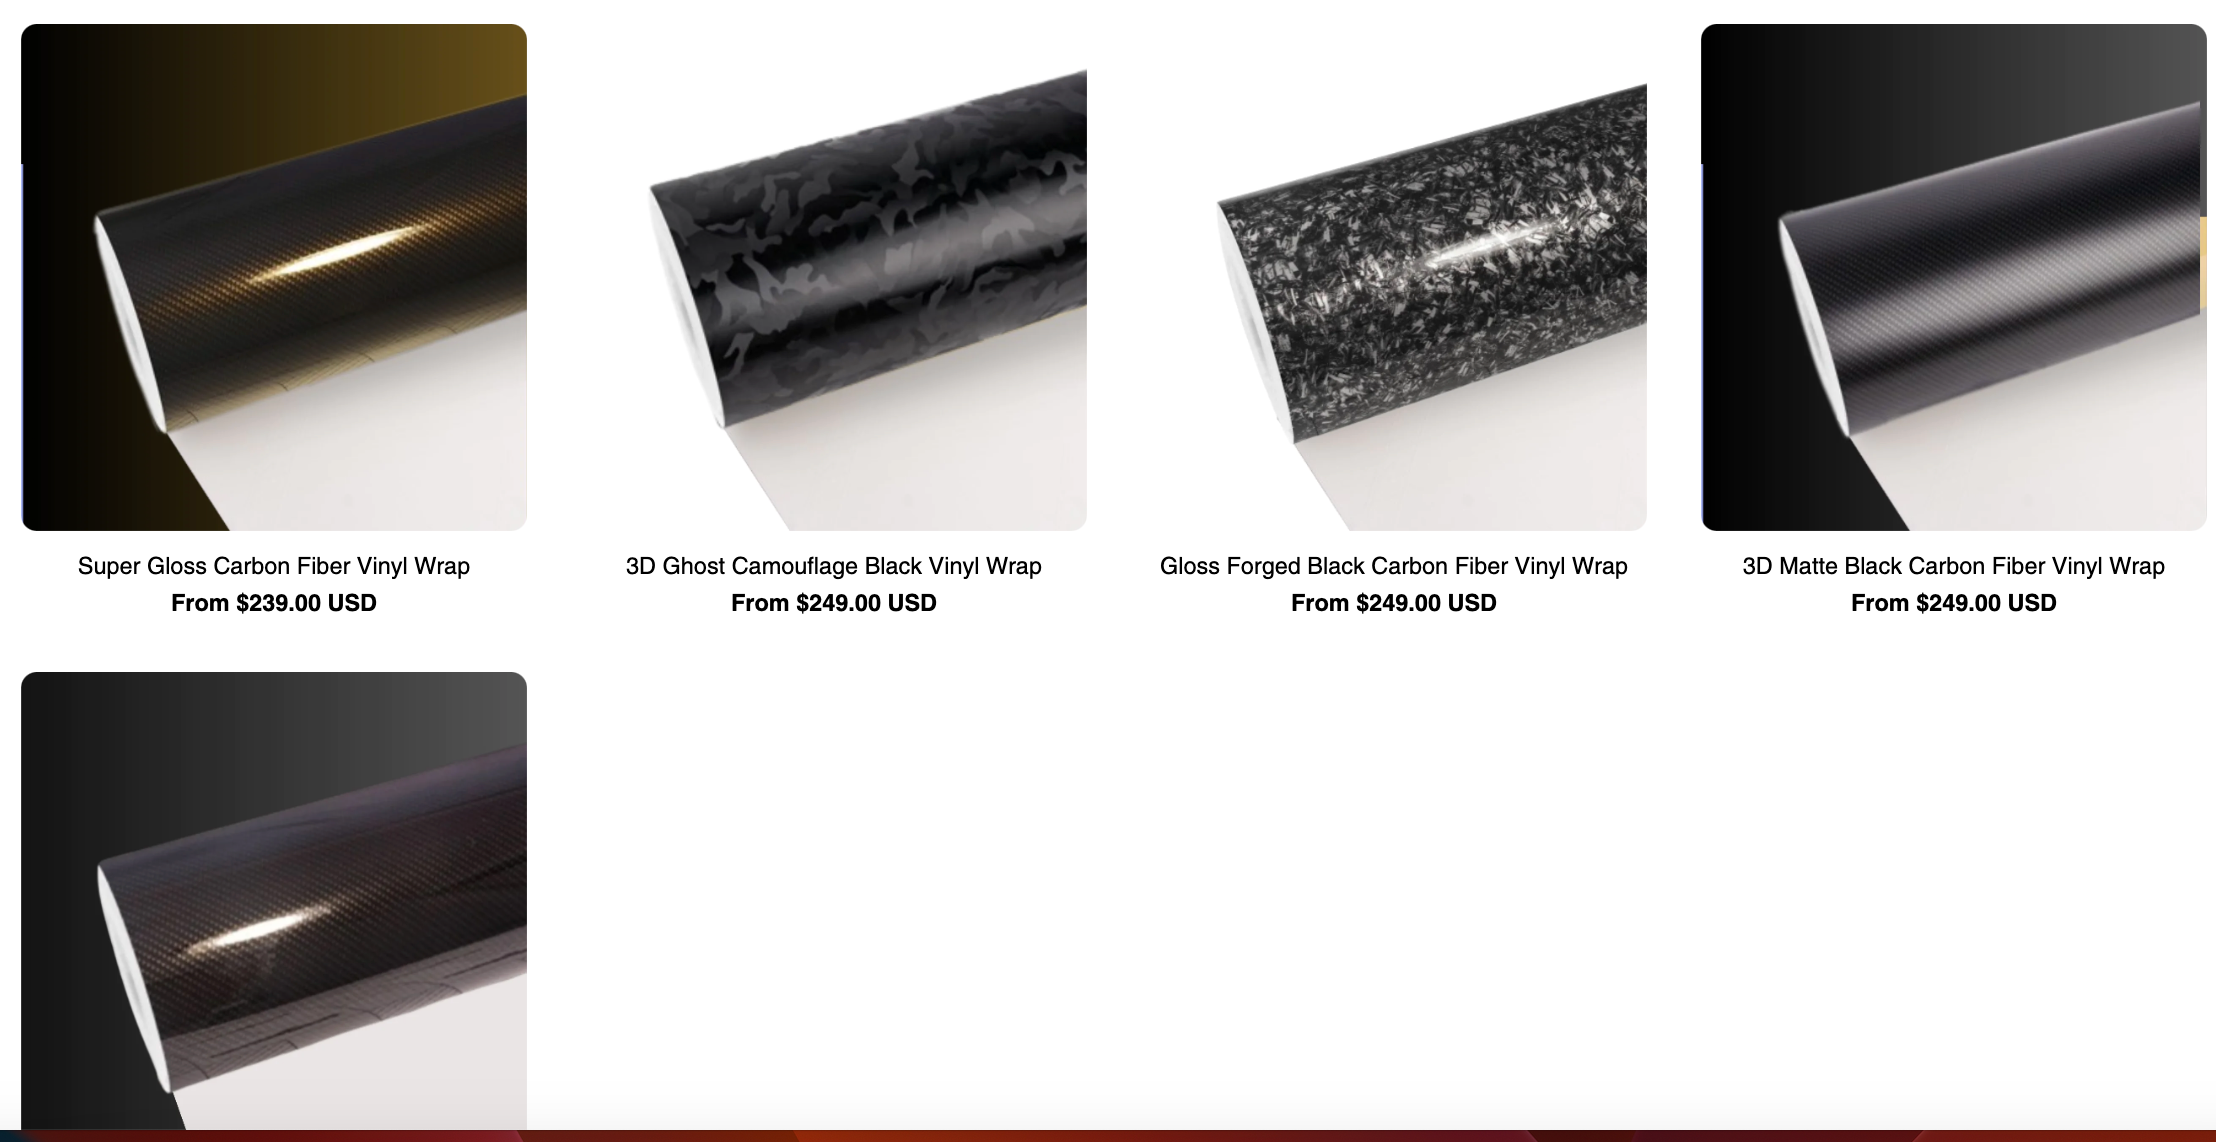 Carbon fiber vinyl wraps